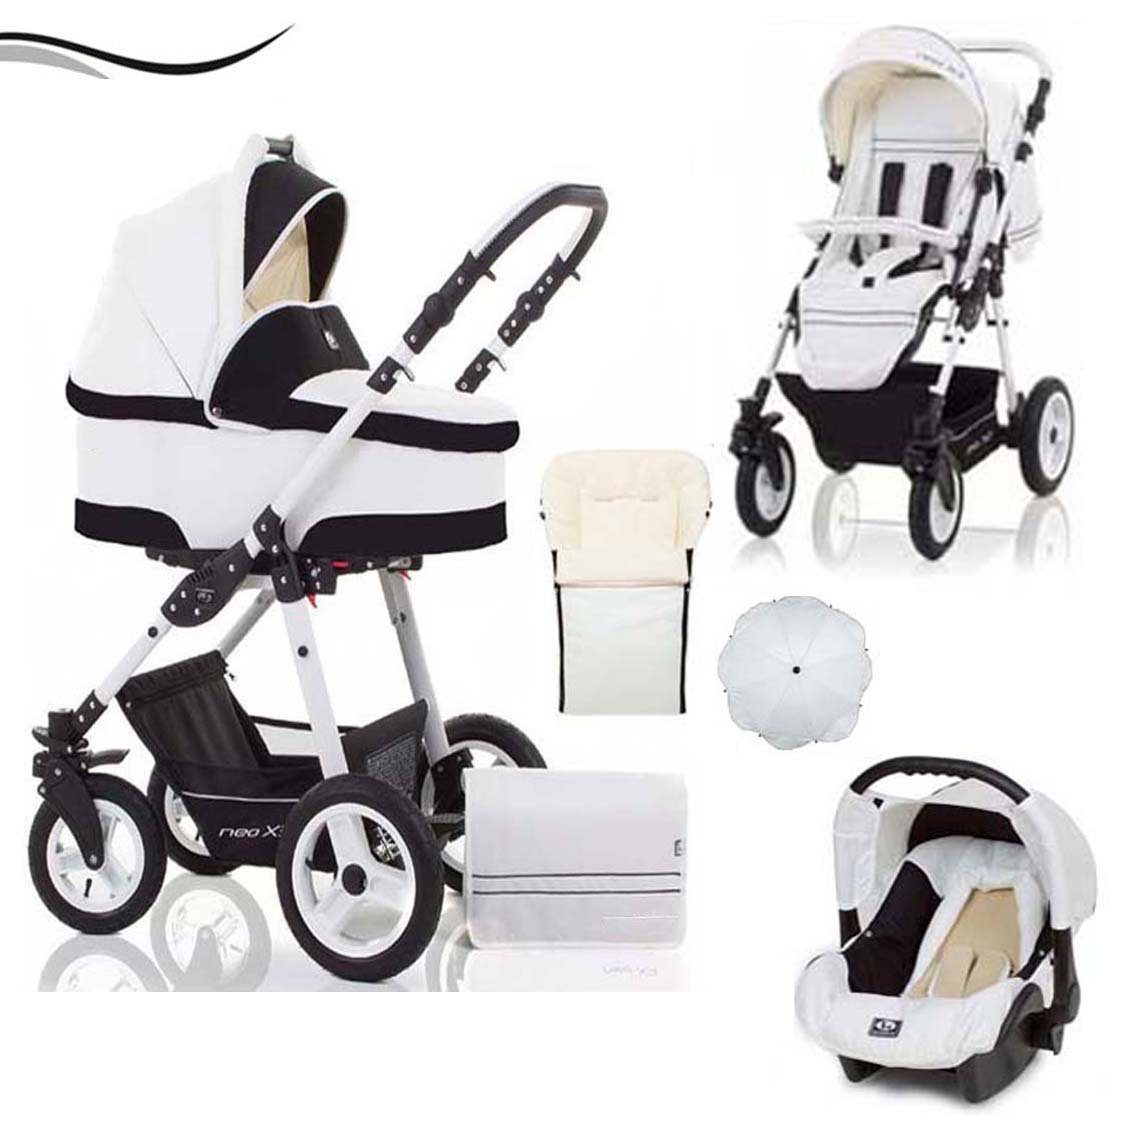 babies-on-wheels Kombi-Kinderwagen City Star 5 in 1 inkl. Autositz, Sonnenschirm und Fußsack - 18 Teile - von Geburt bis 4 Jahre in 16 Farben Weiß-Schwarz